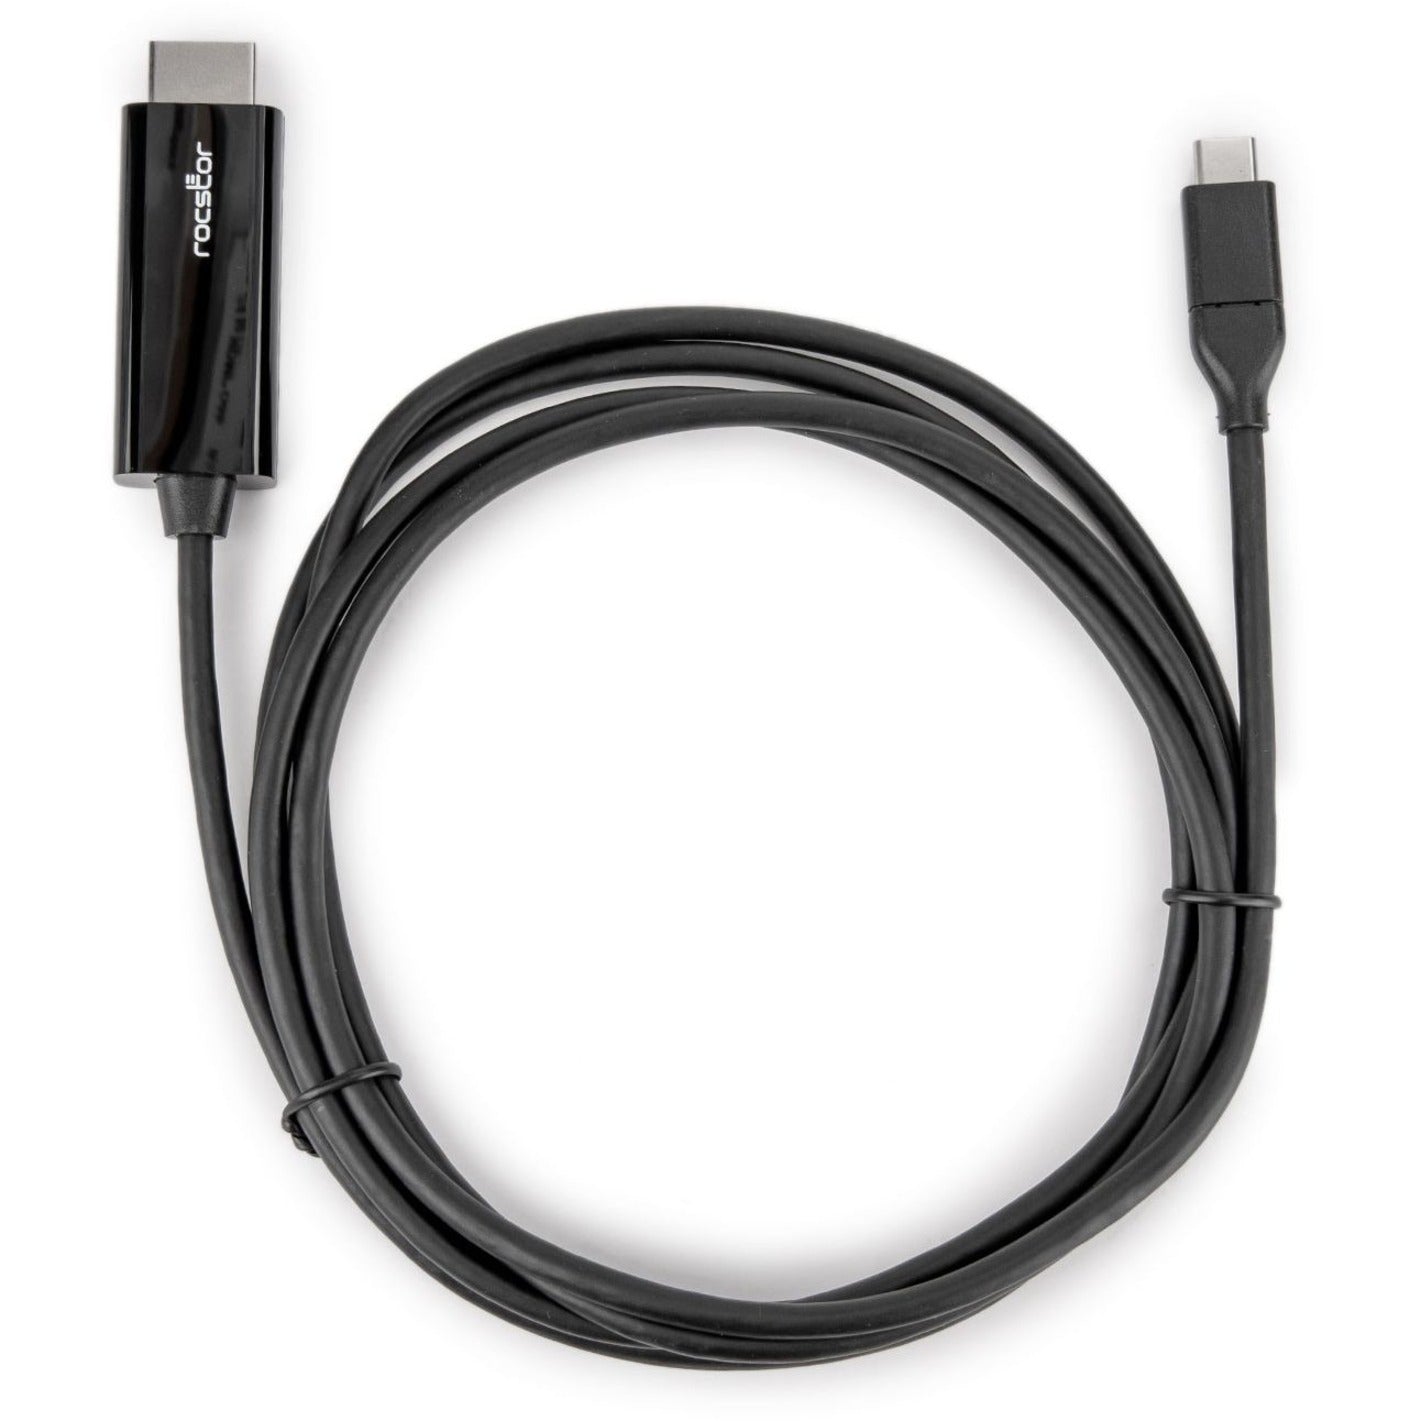 Rocstor Y10C293-B1 Premium USB-C to HDMI Cable - 4K 60Hz, Flexible, Reversible, HDCP 2.2, 6 ft, Black